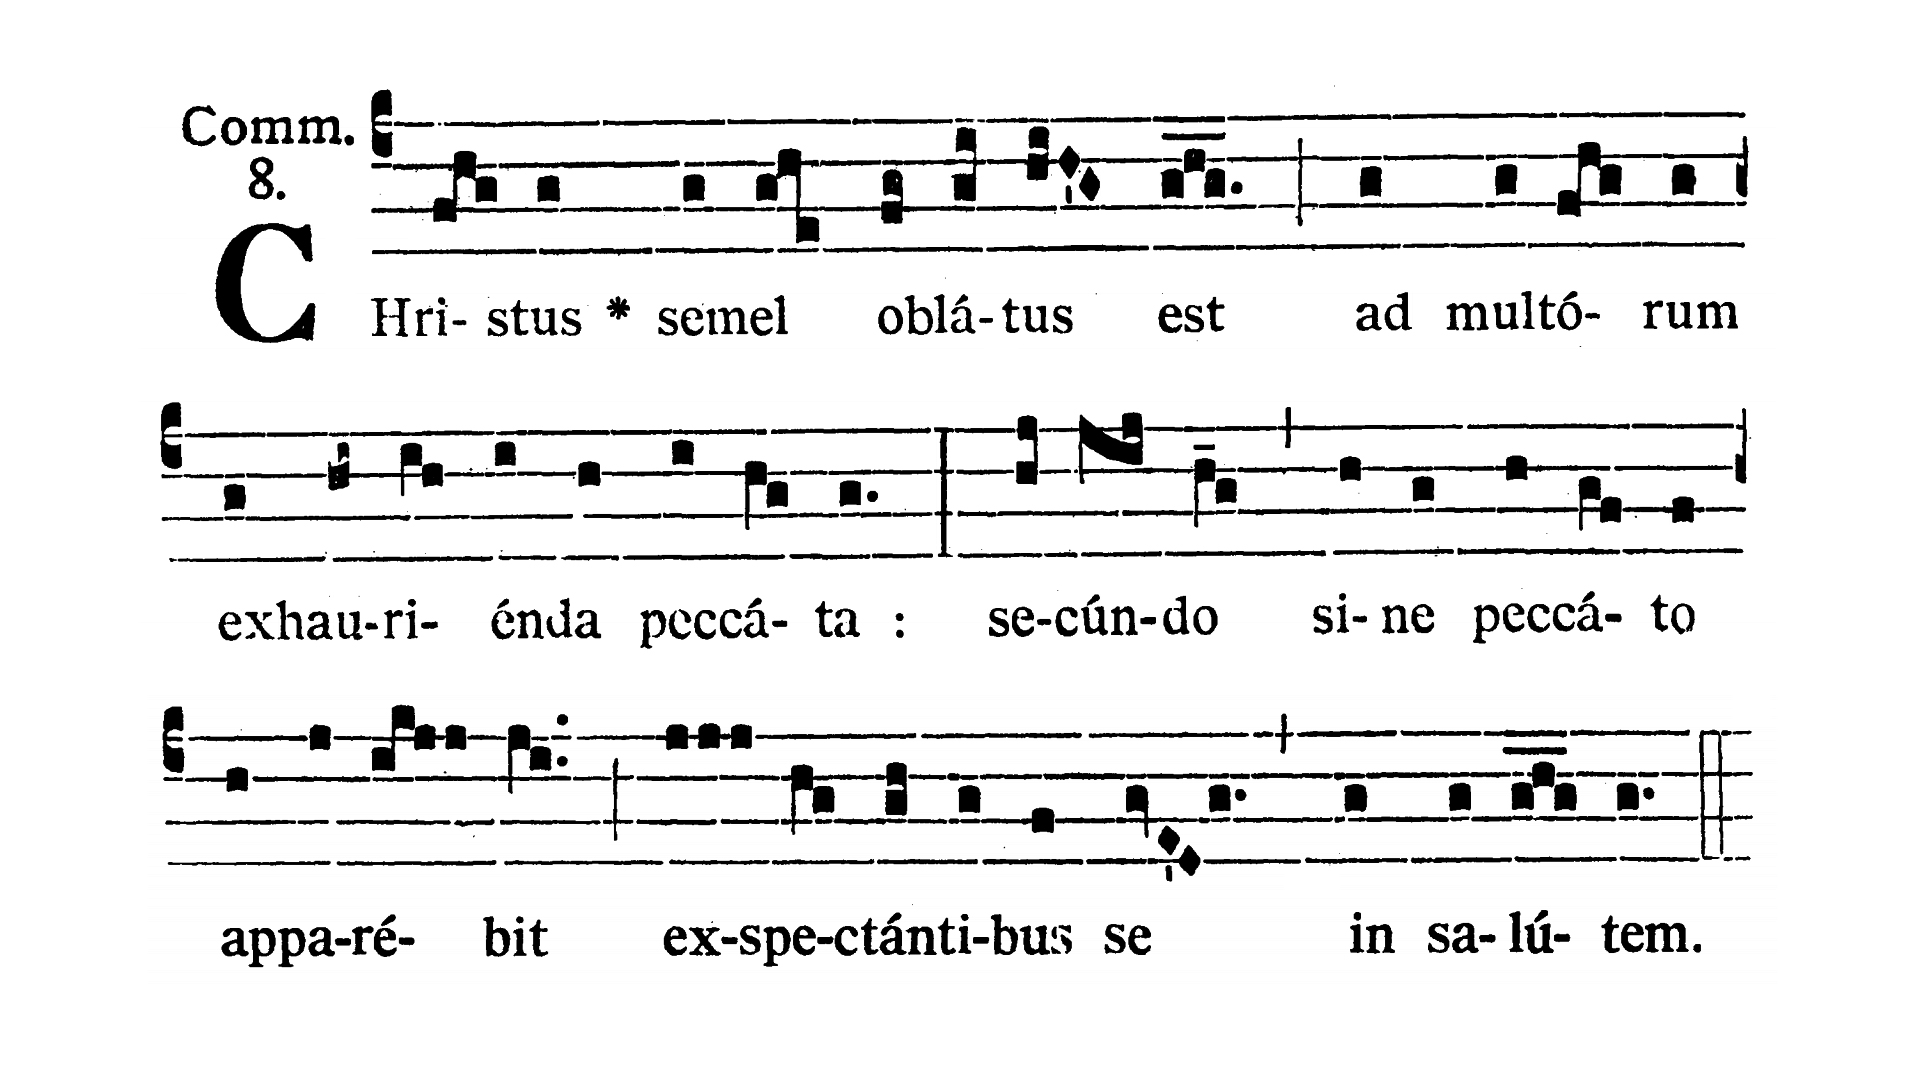 Pretiosissimi Sanguinis Domini Nostri Iesu Christi - Communio (Christus semel oblatus est)